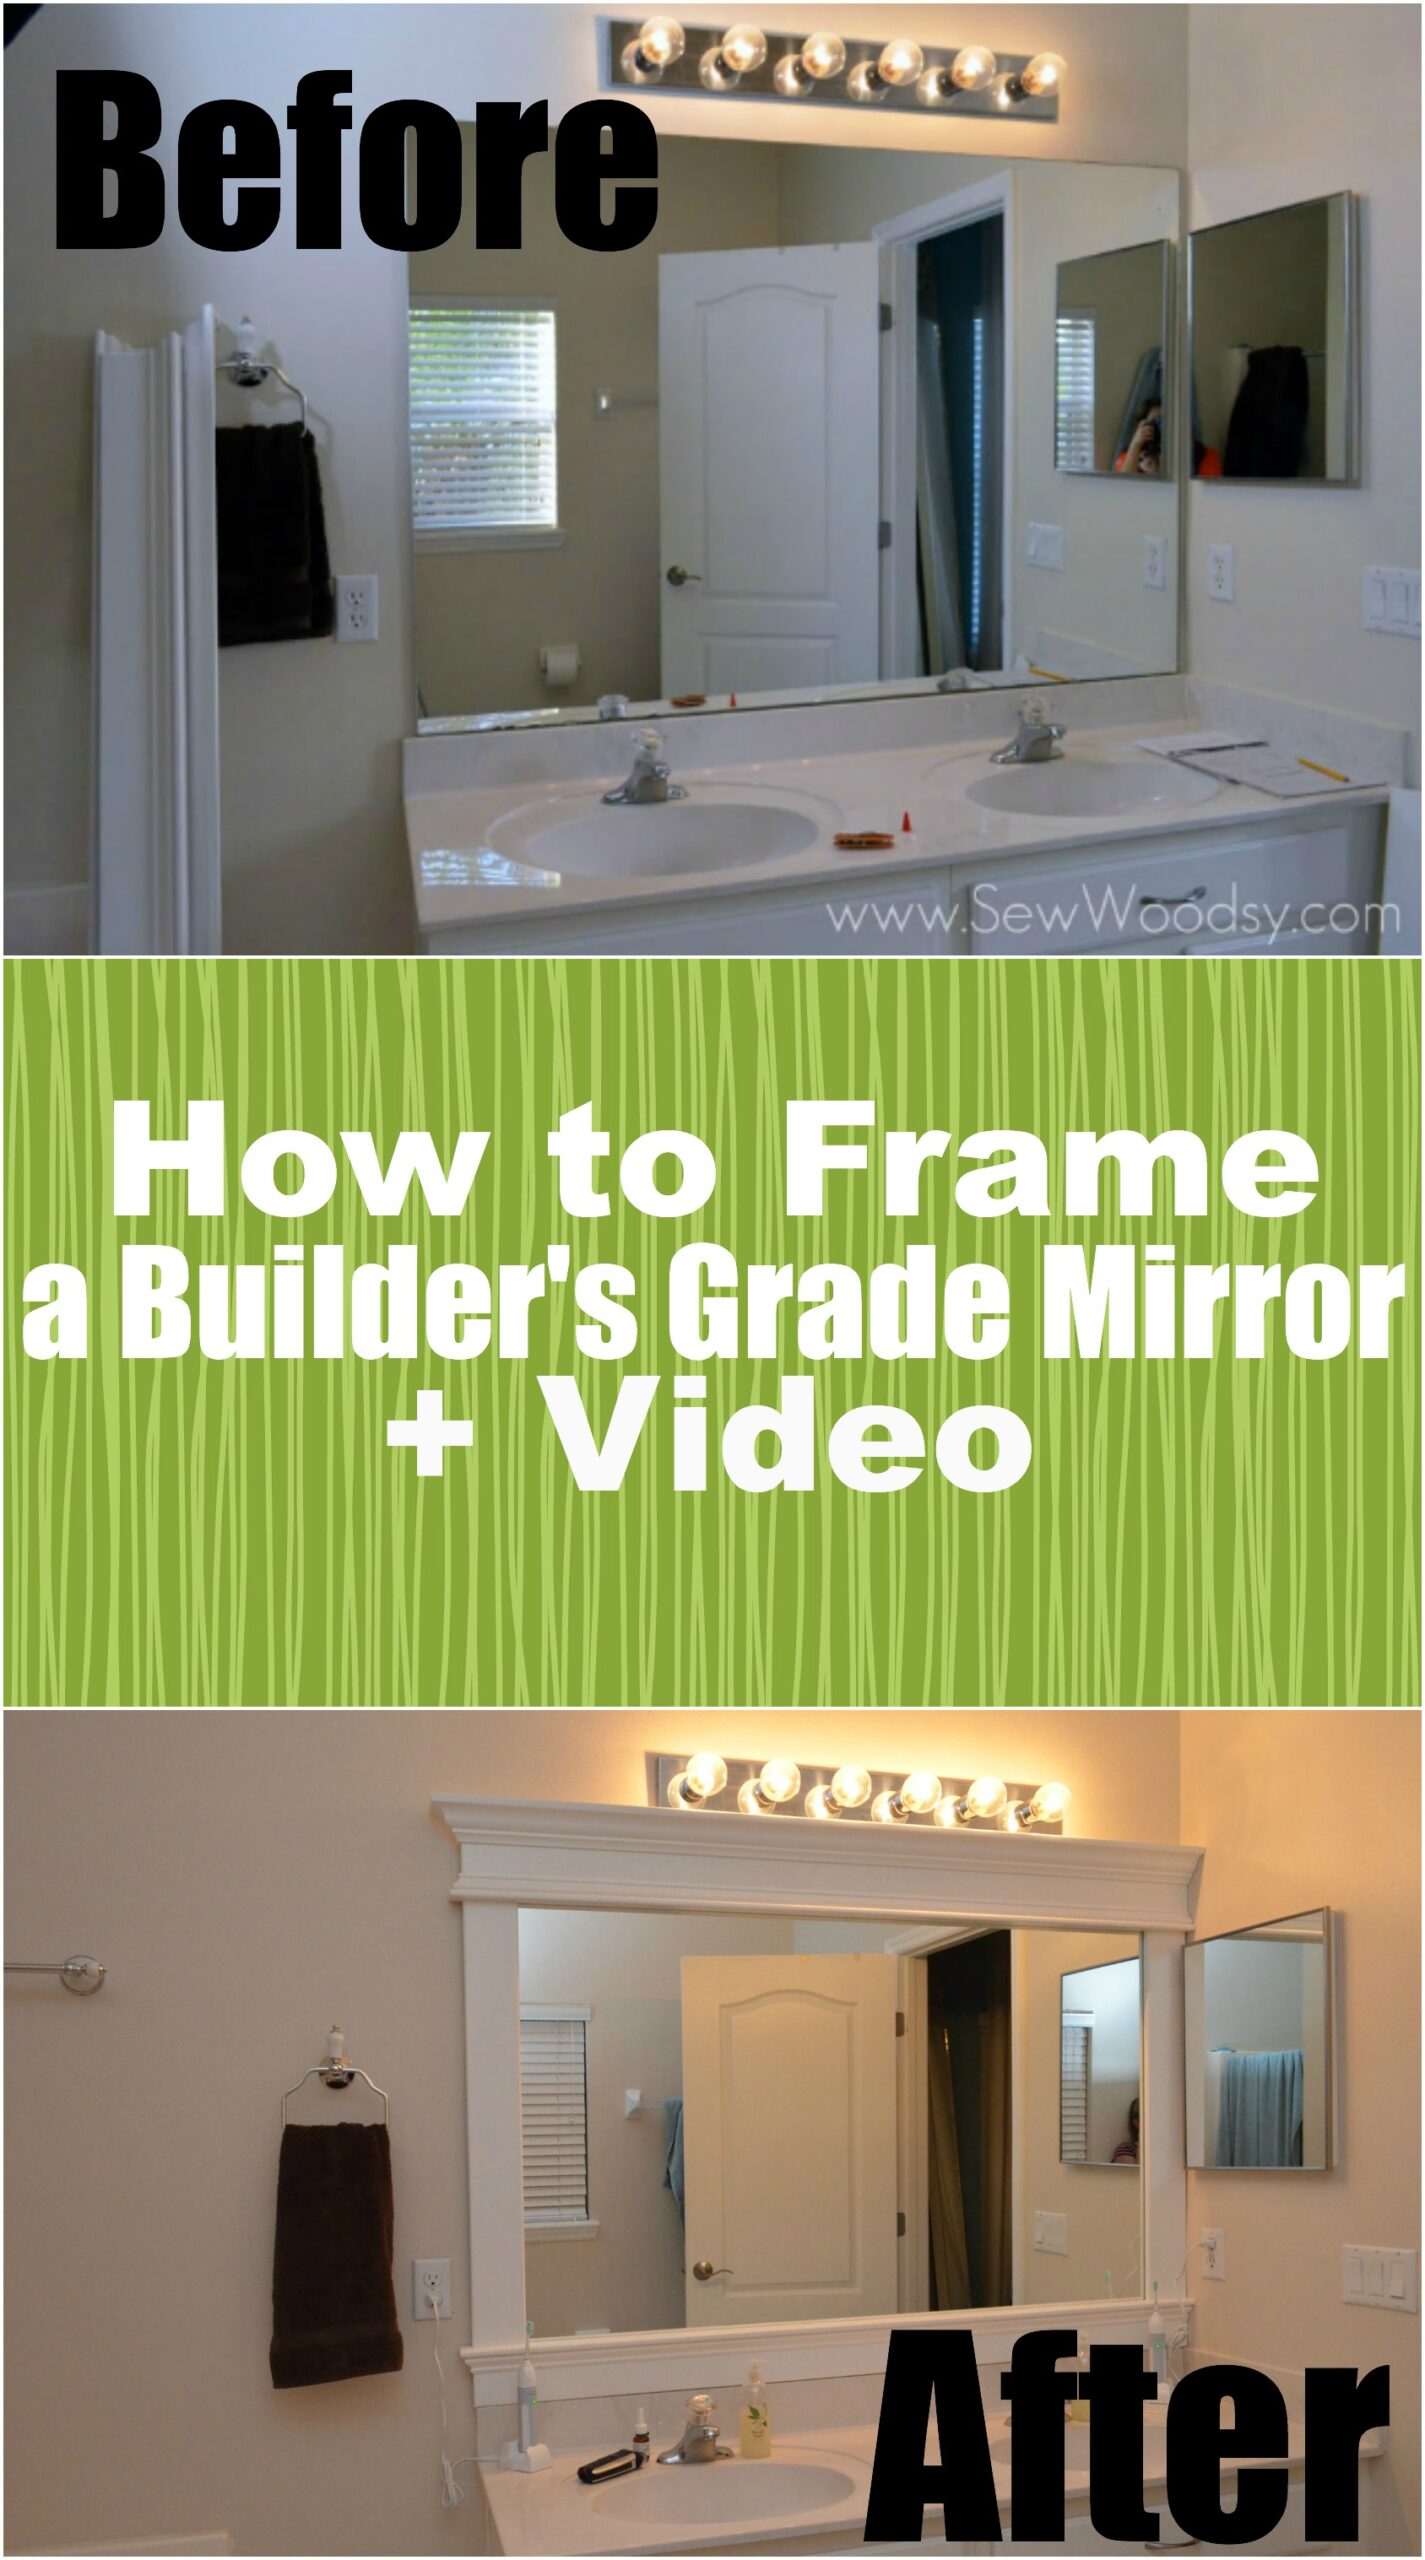 How to Frame a Builder's Grade Mirror (Before and After) via SewWoodsy.com for @HomesDotCom